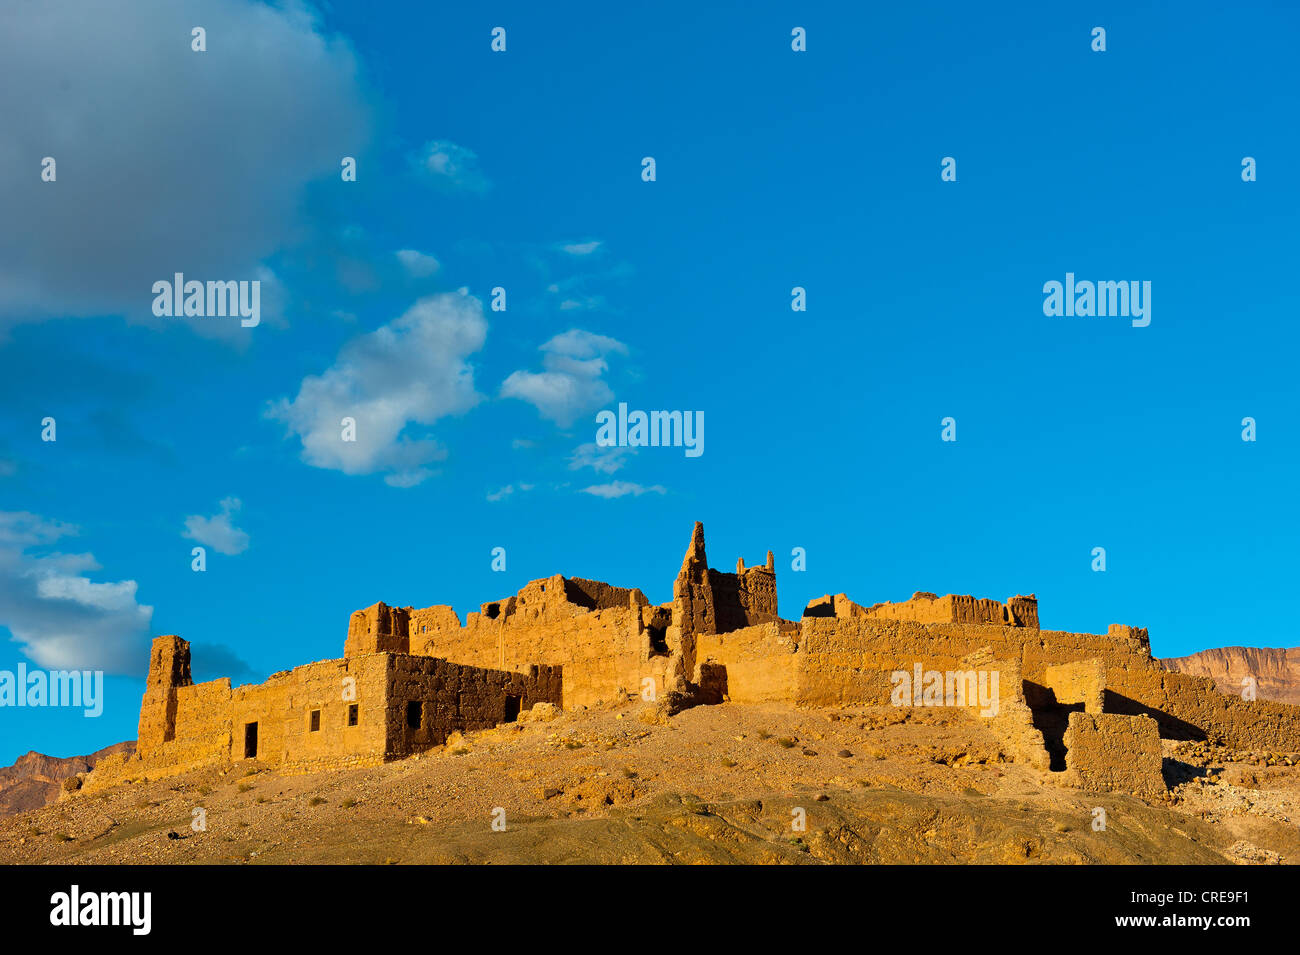 Kasbah en ruine sur une colline, une ancienne maison des Berbères d'adobe, vallée du Drâa, sud du Maroc, Maroc, Afrique Banque D'Images